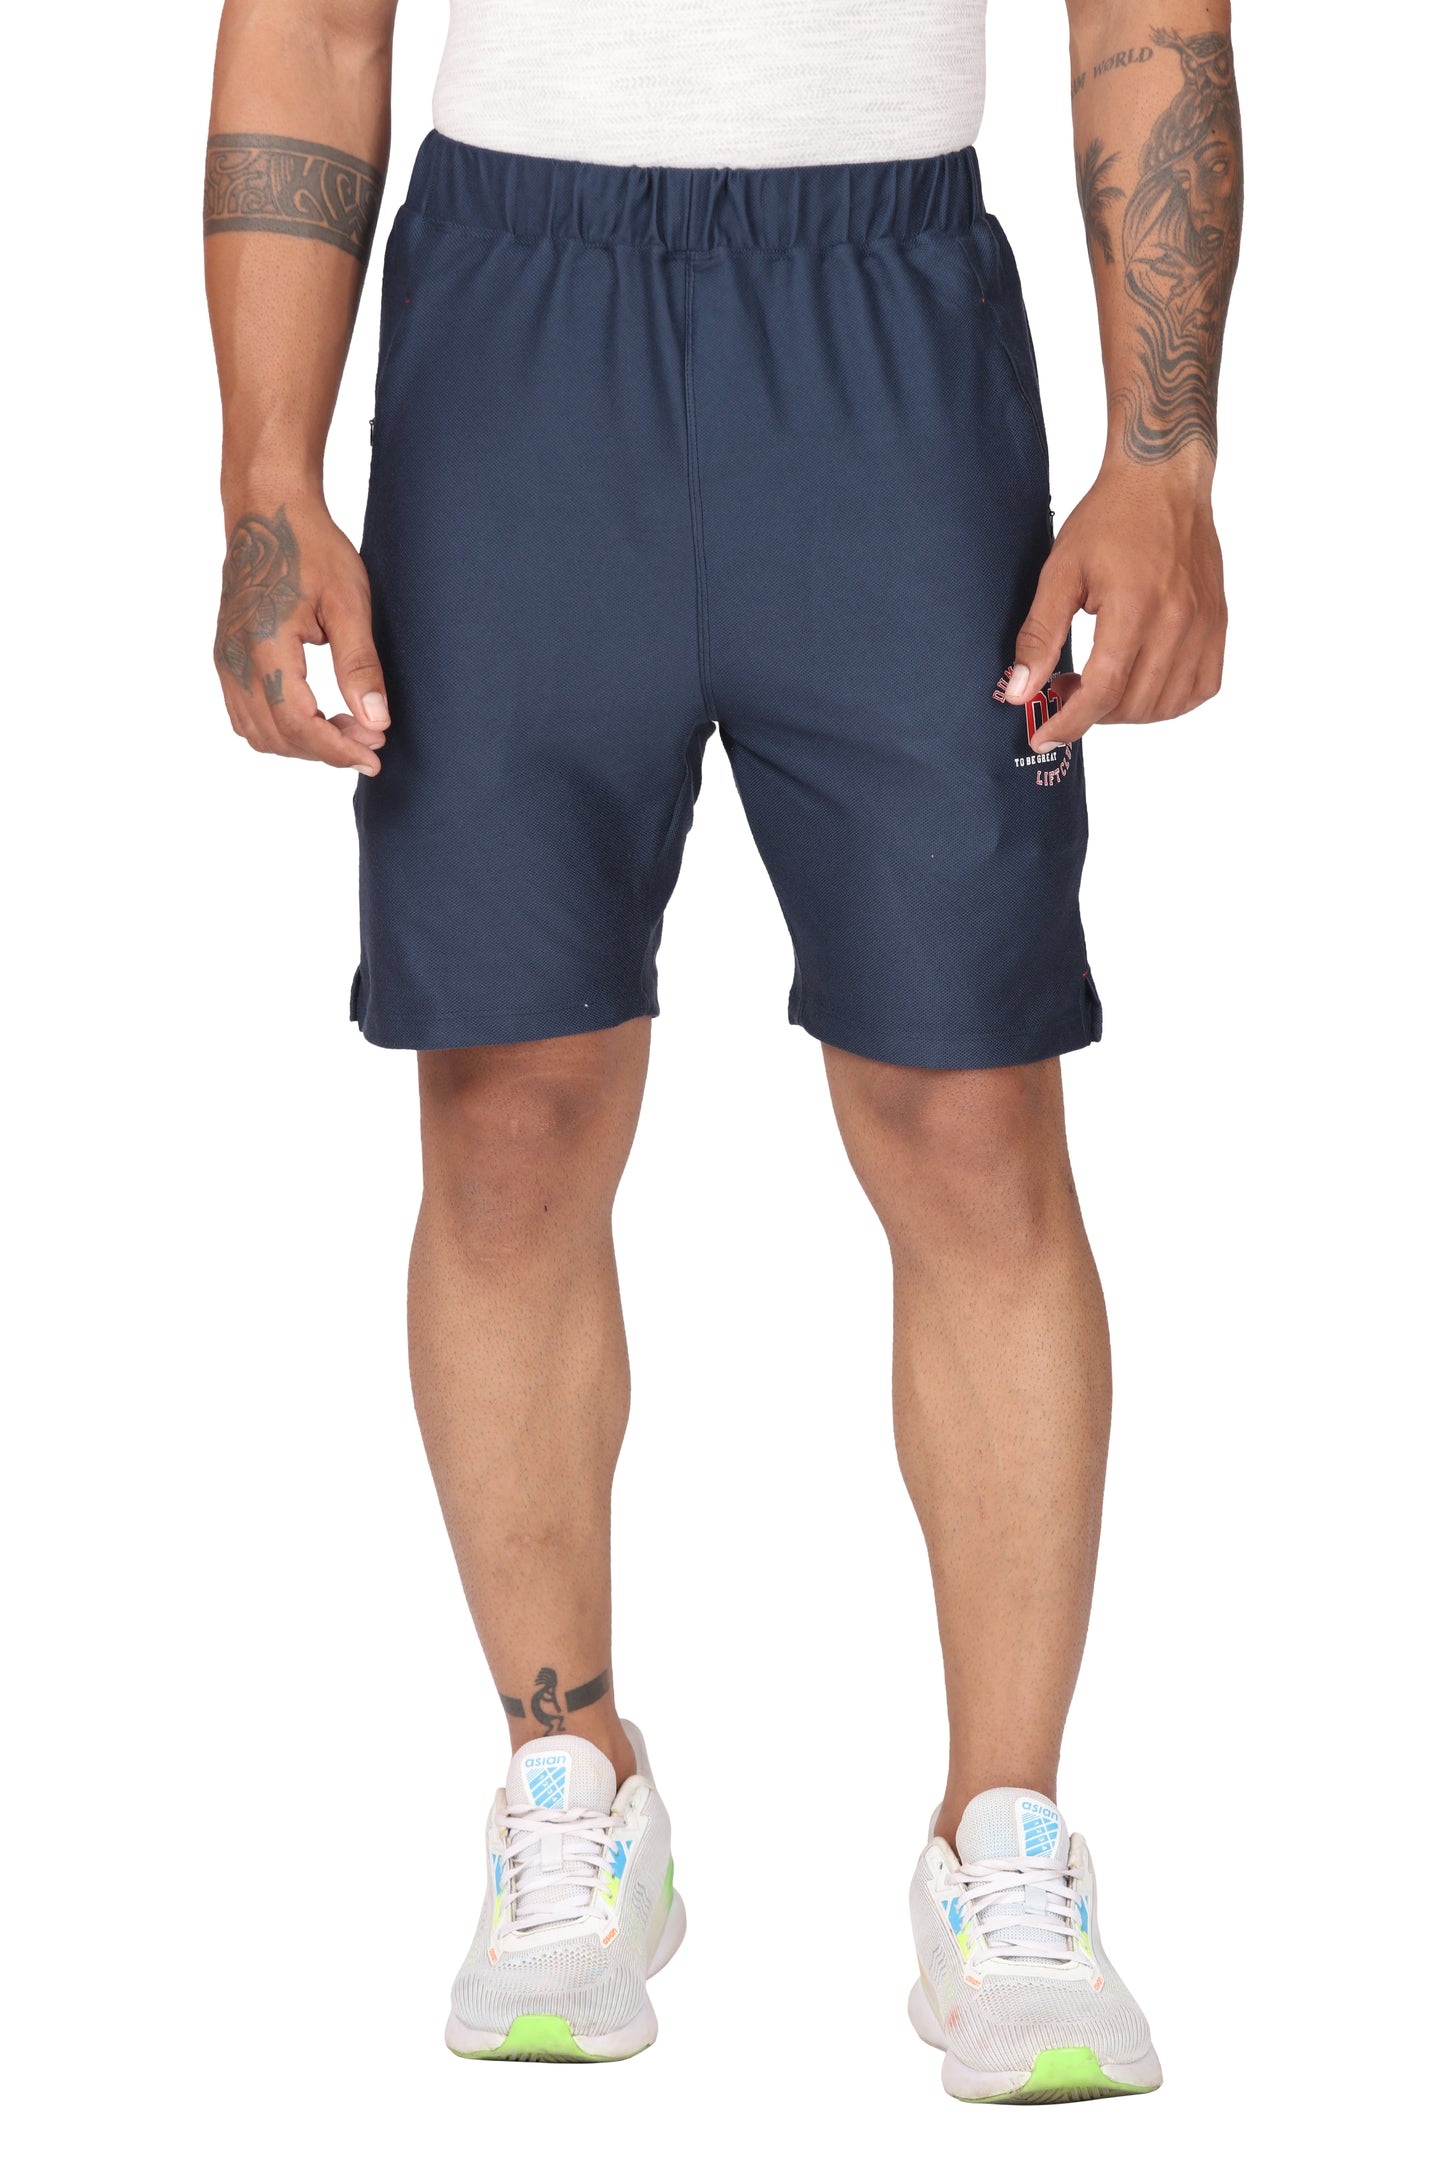 Men's Breathable Shorts Dri-FIT